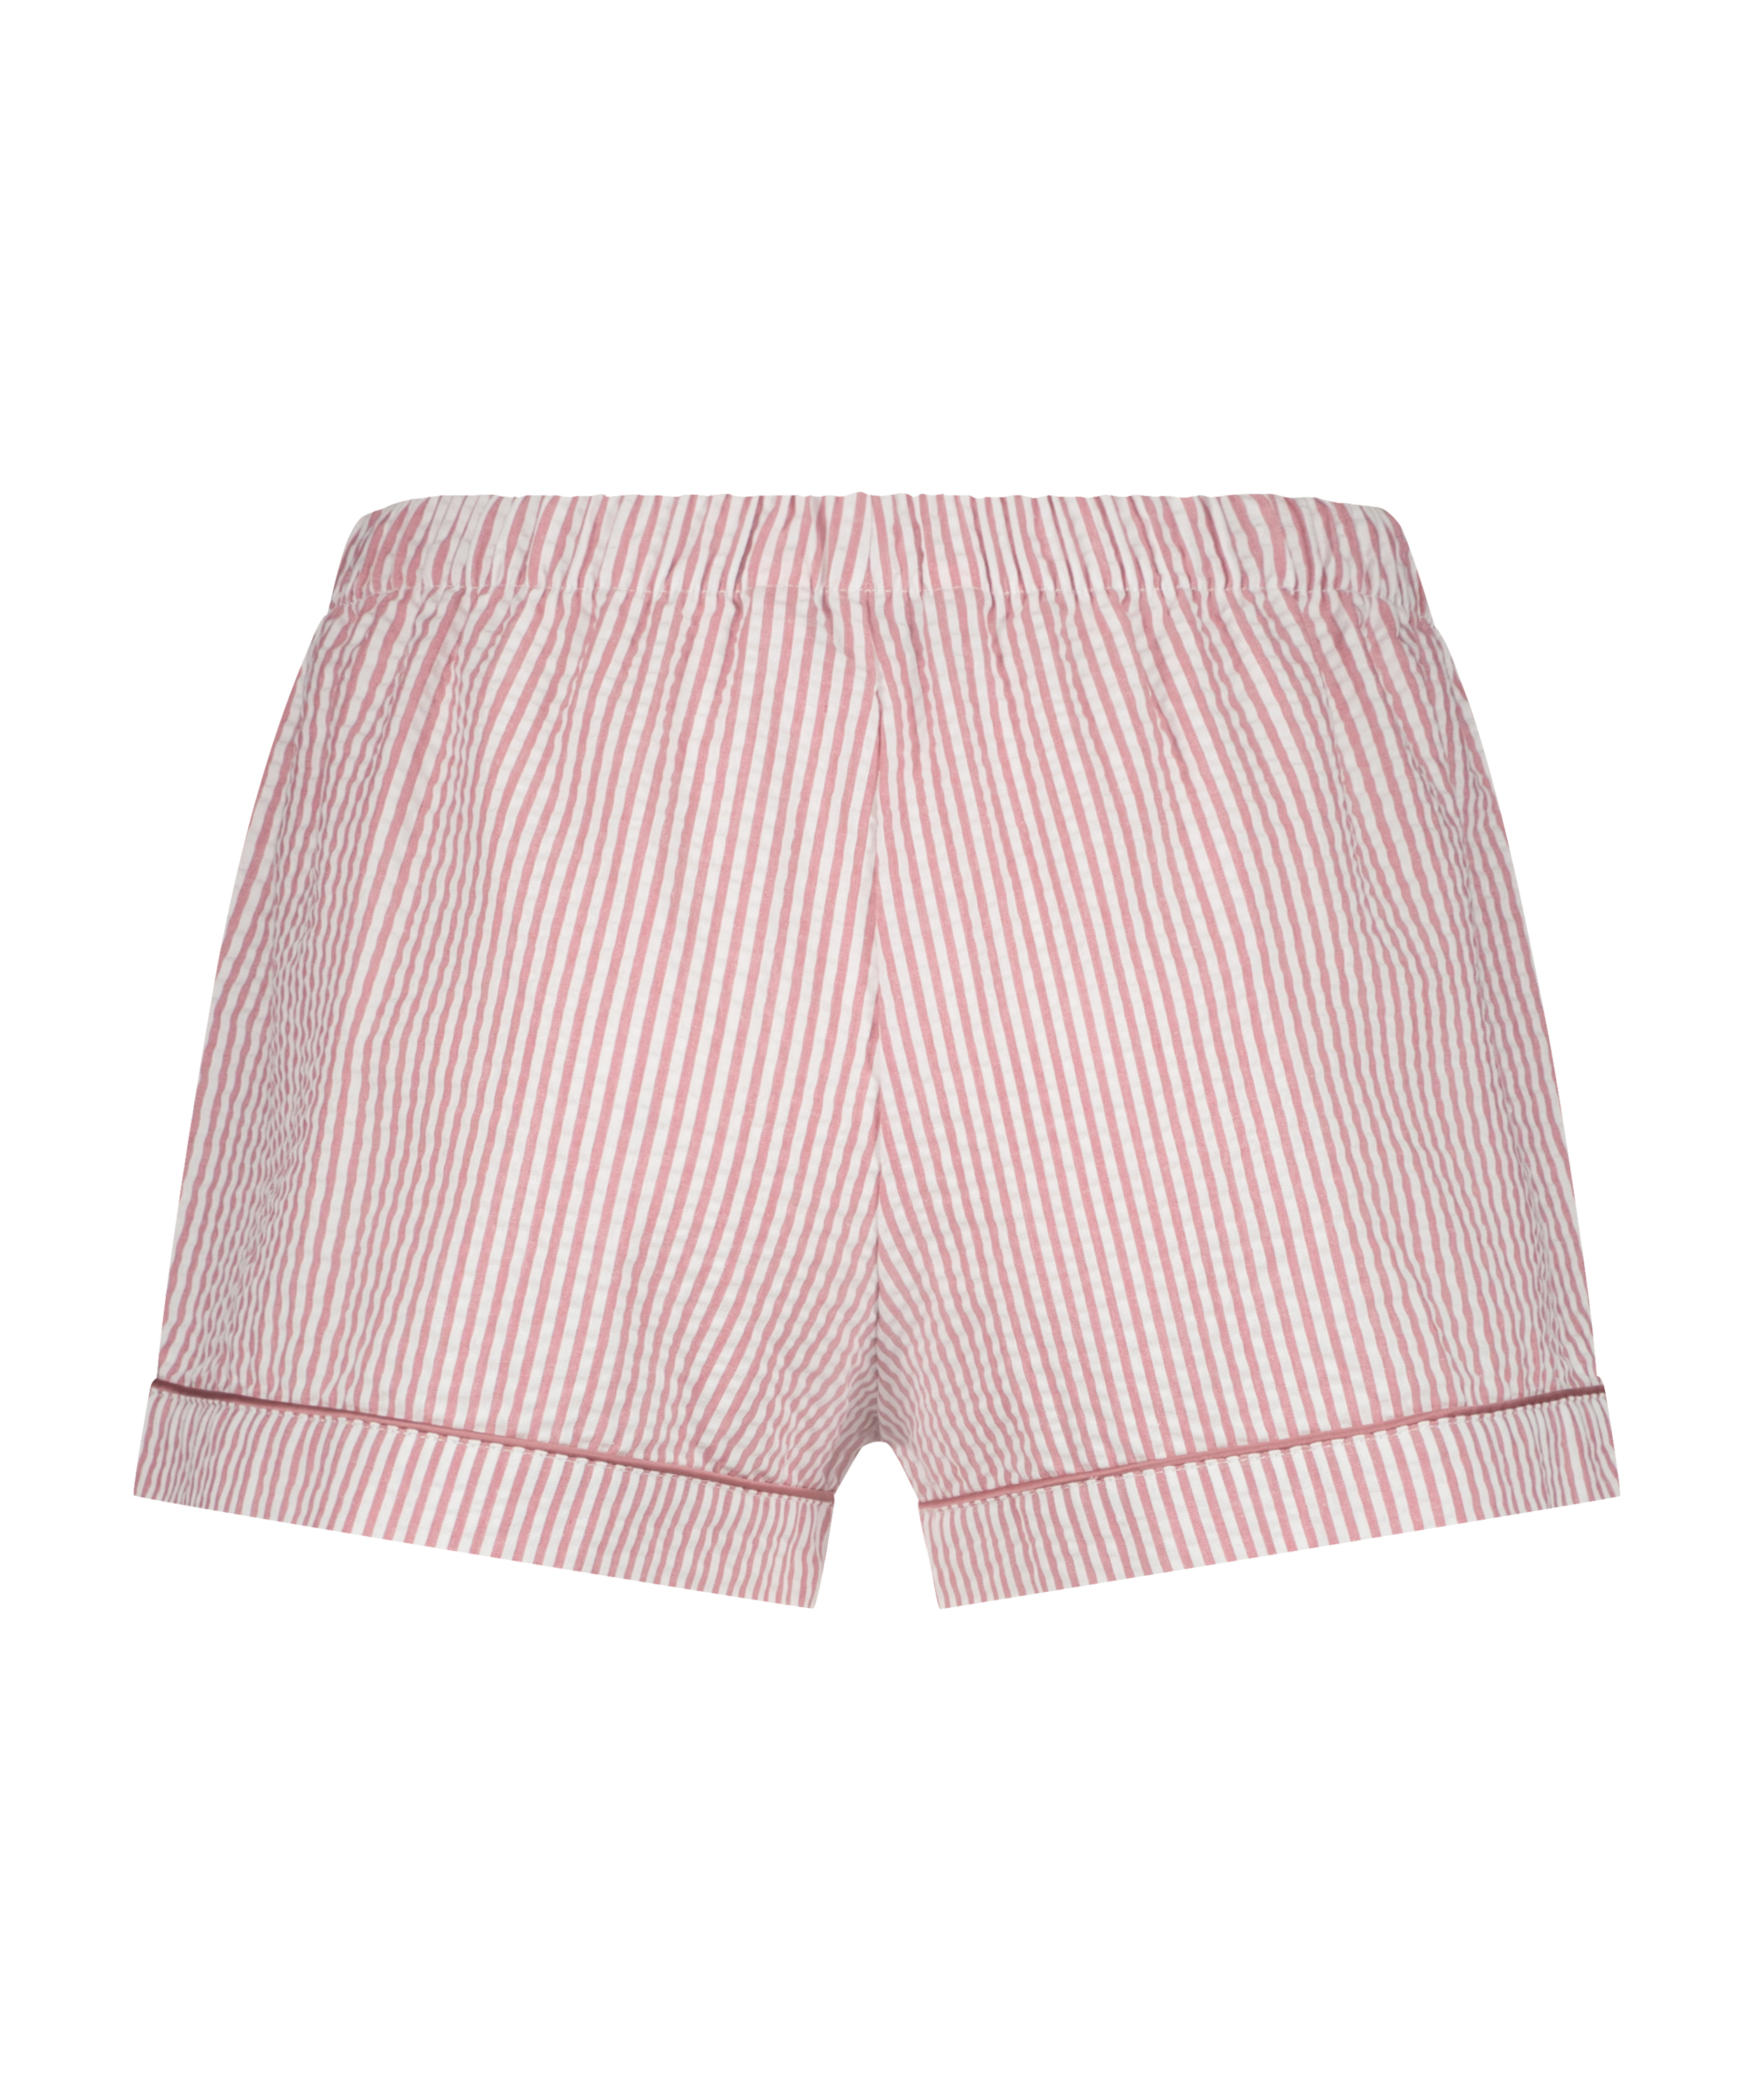 Shorts Cotton, pink, main